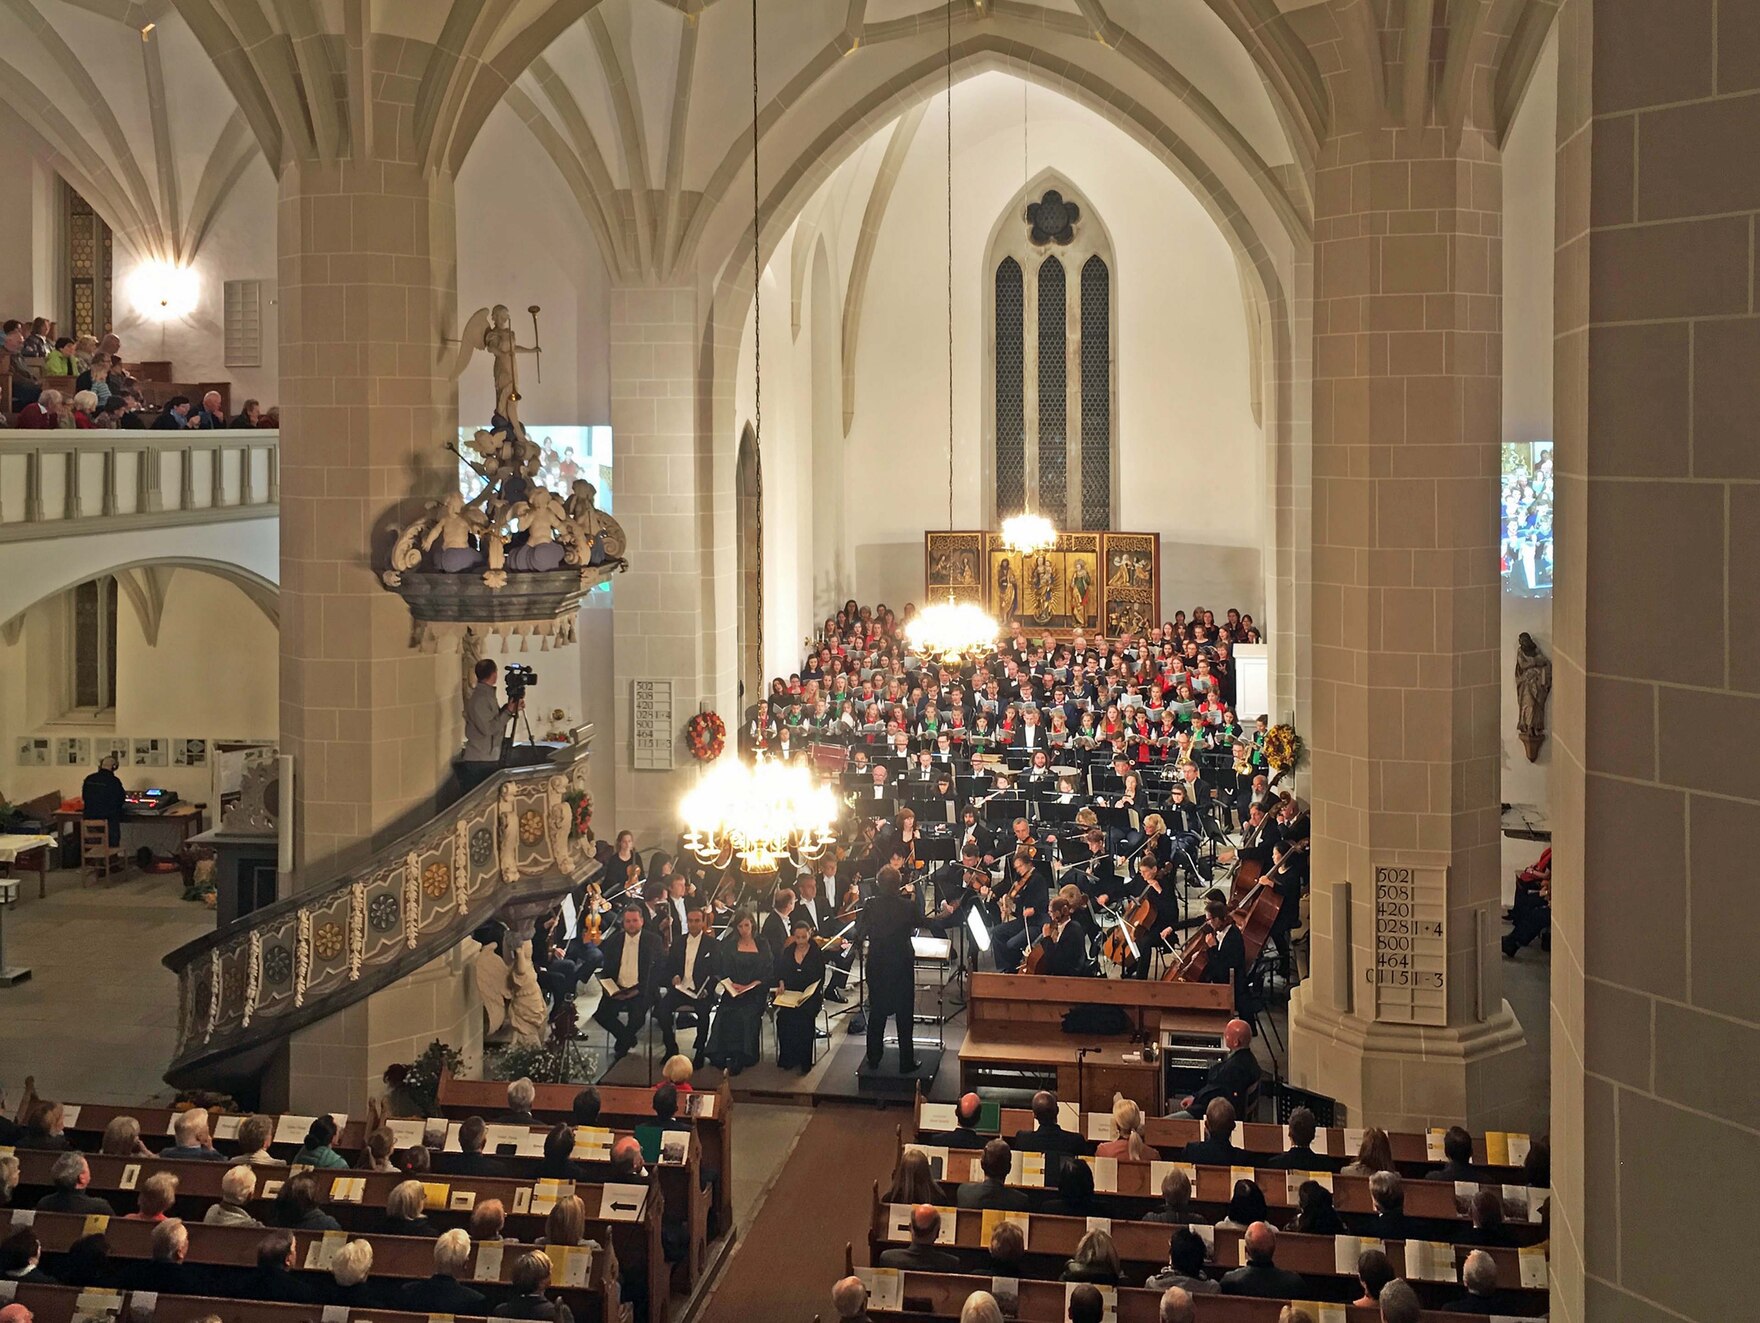 Gezeigt wird das Festkonzert in der Plauener St. Johannis Kirche